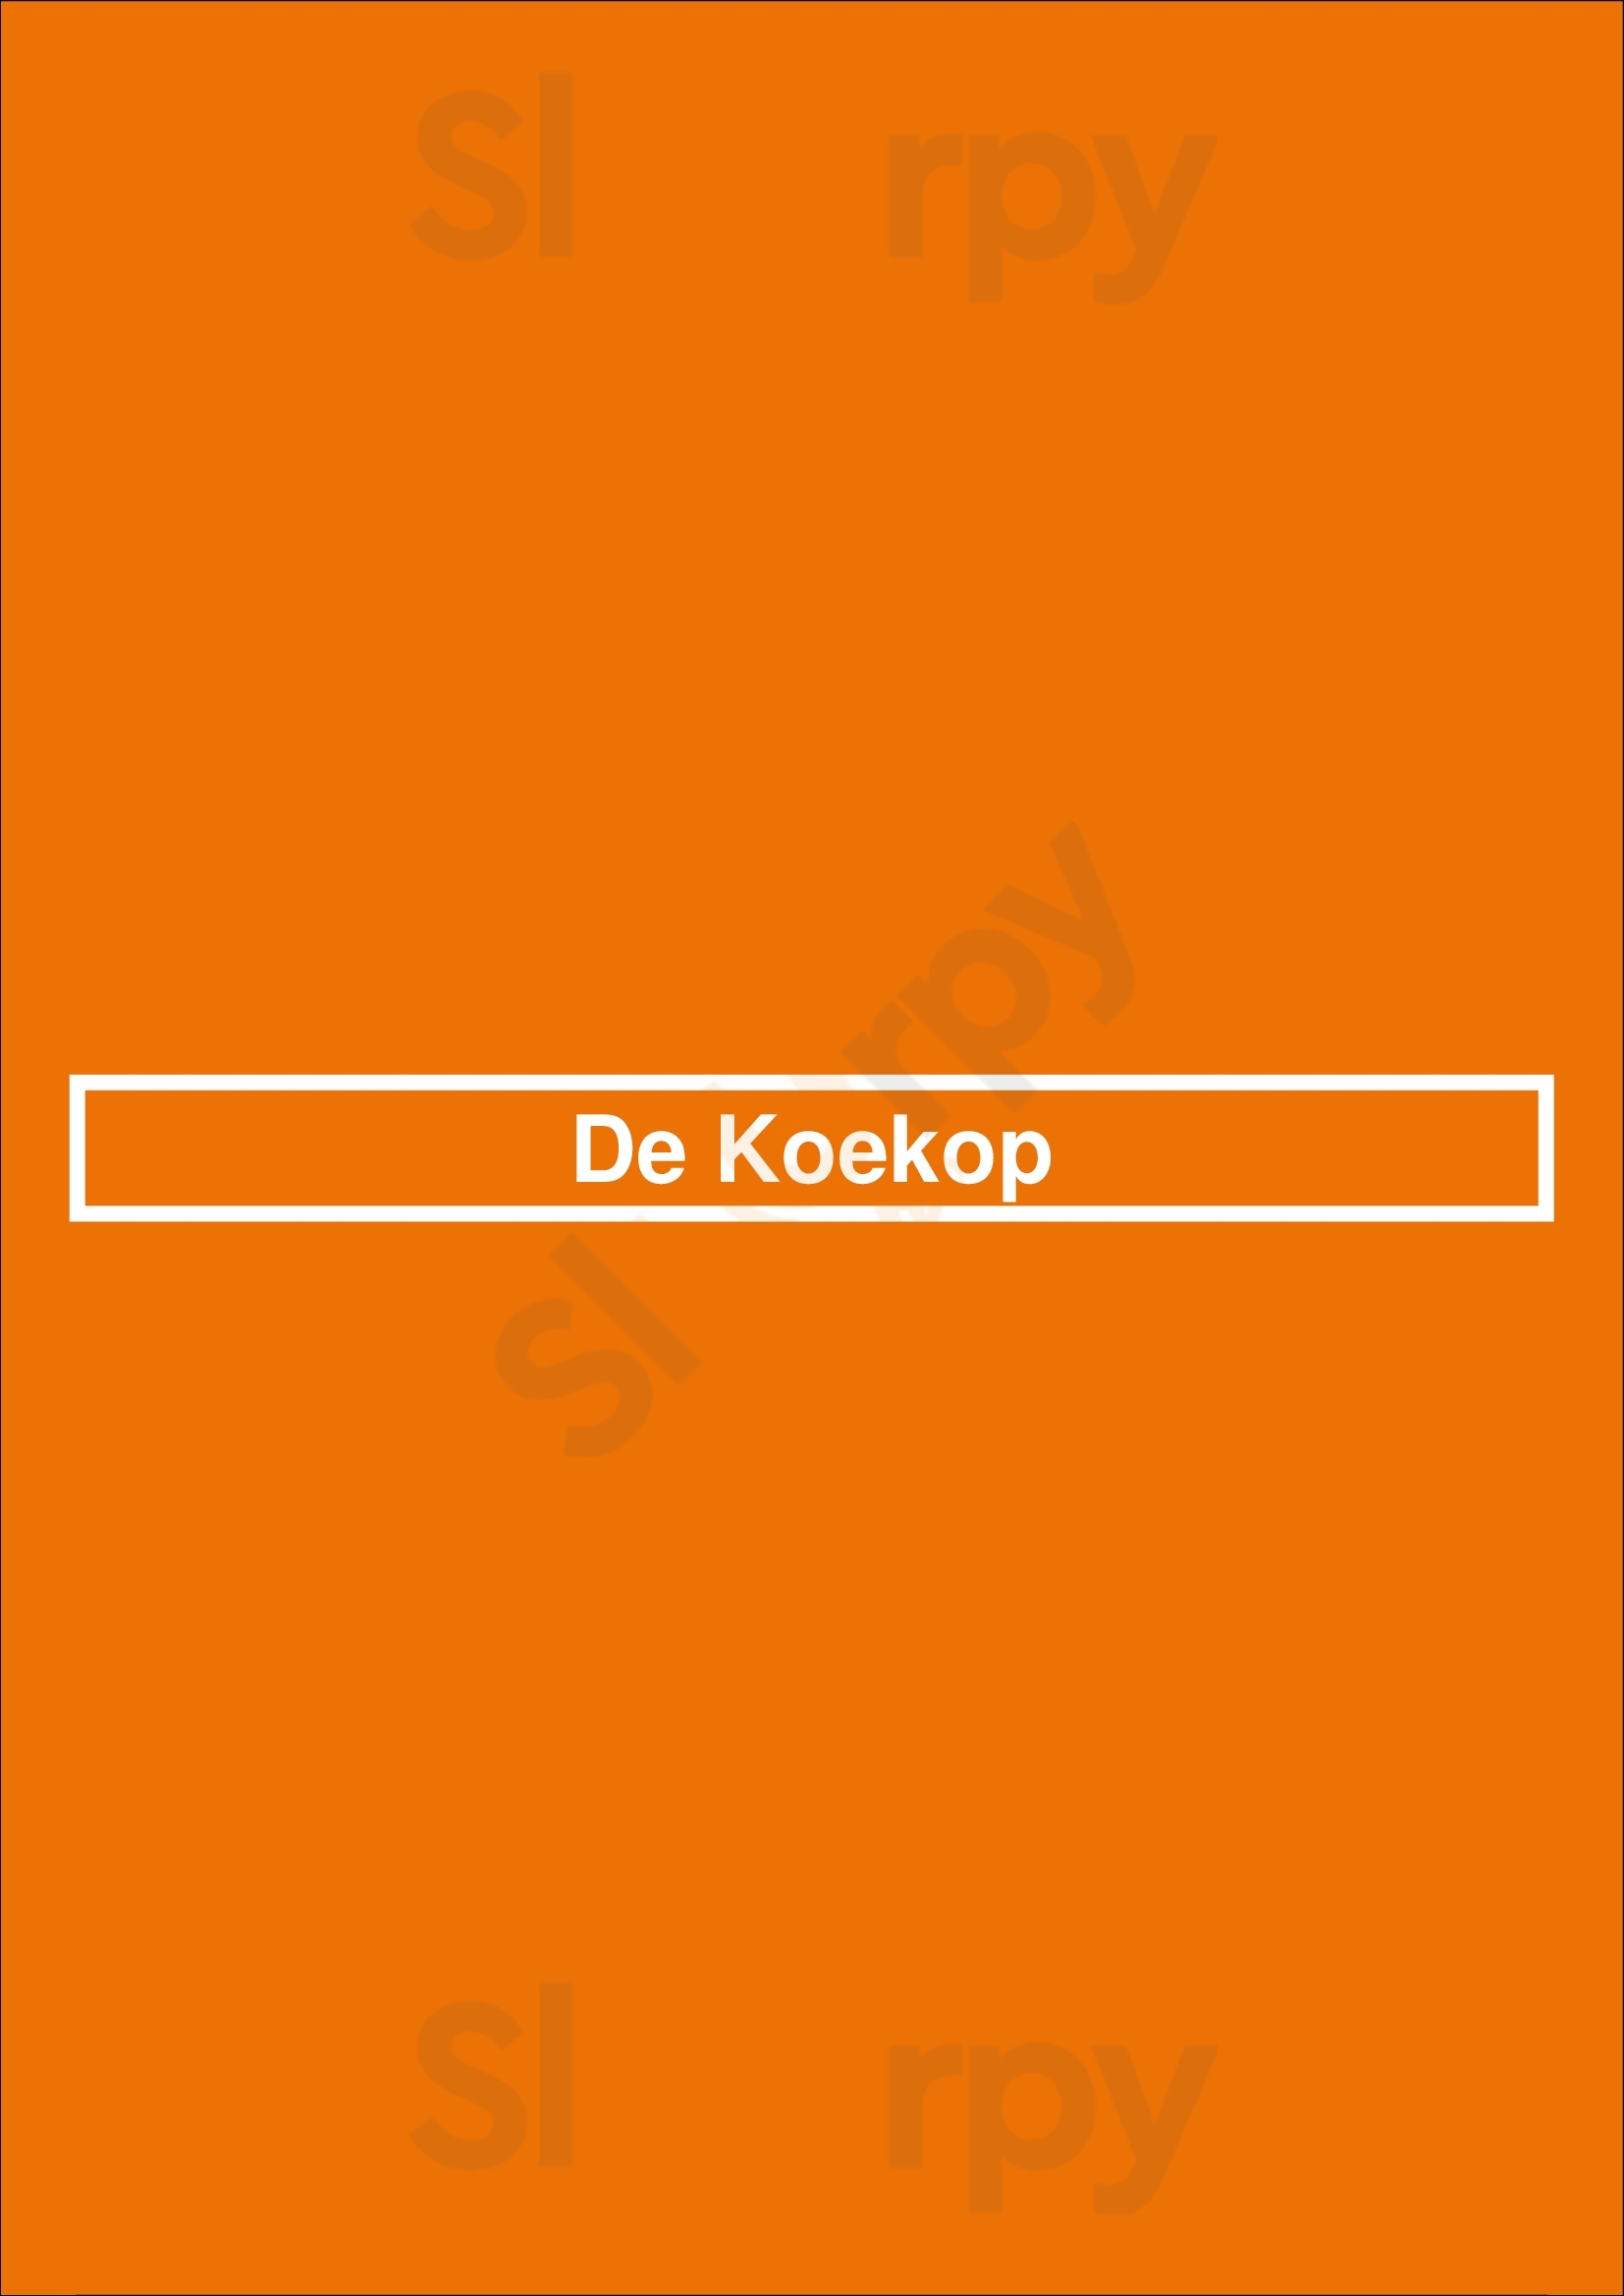 De Koekop Leiden Menu - 1